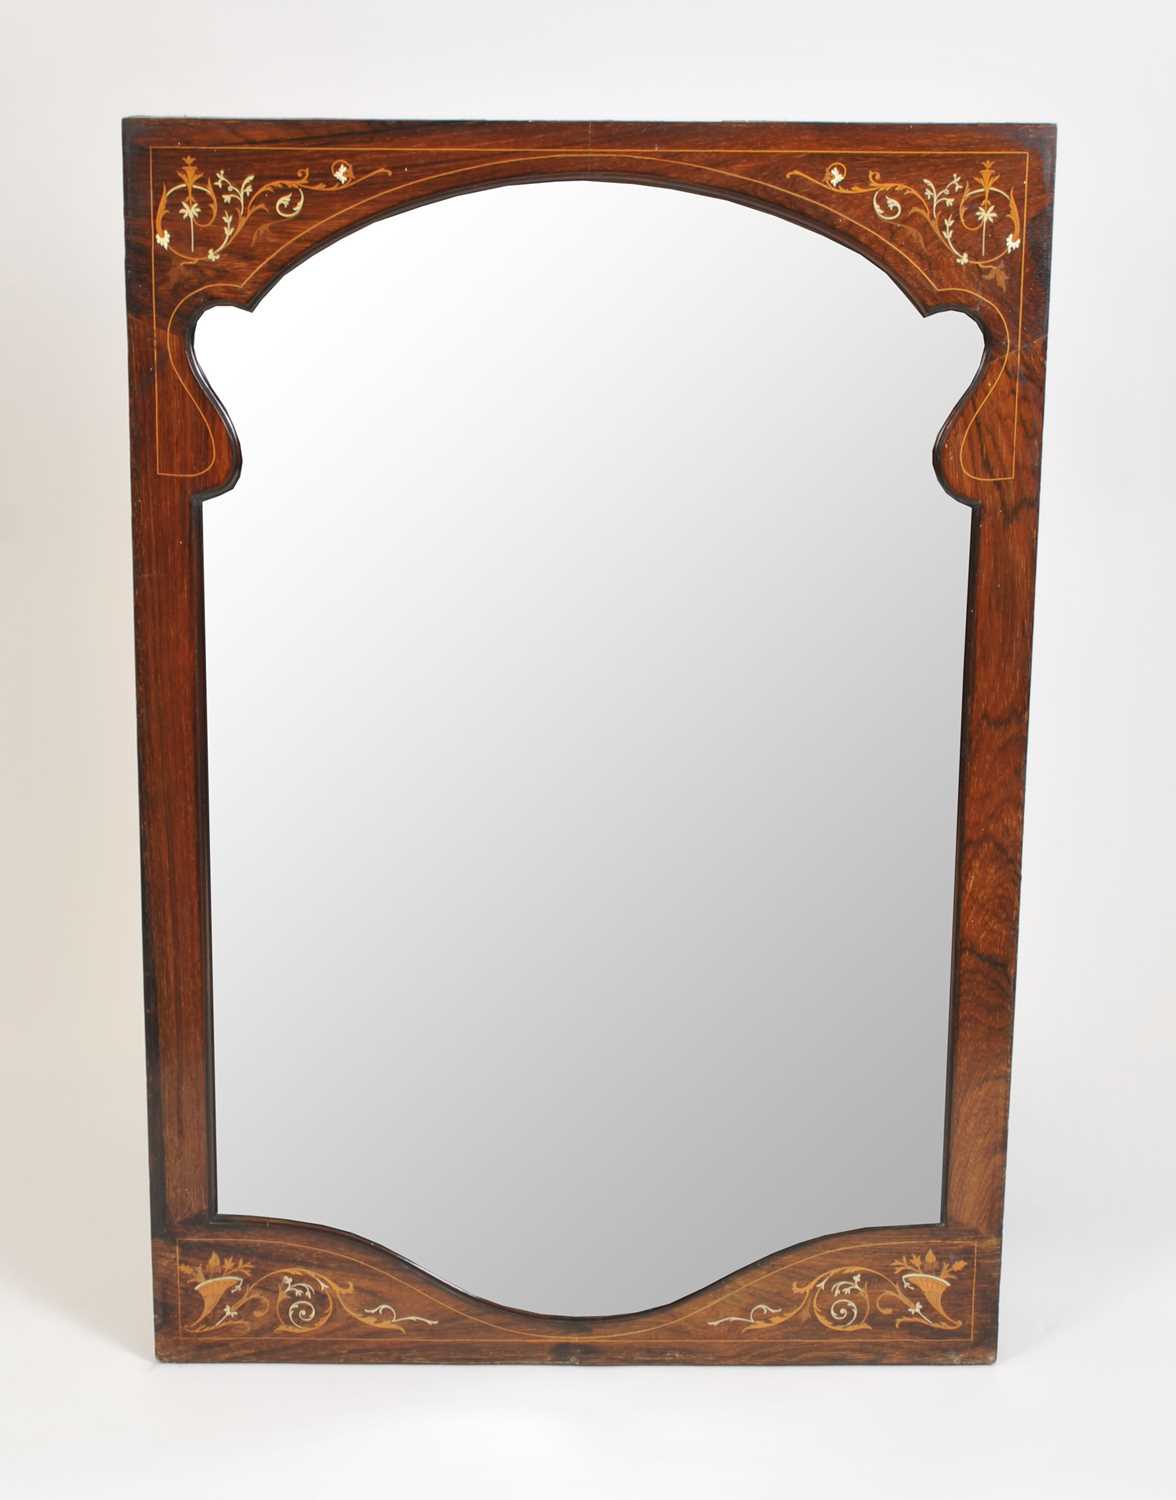 An Edwardian inlaid rosewood veneered wall mirror